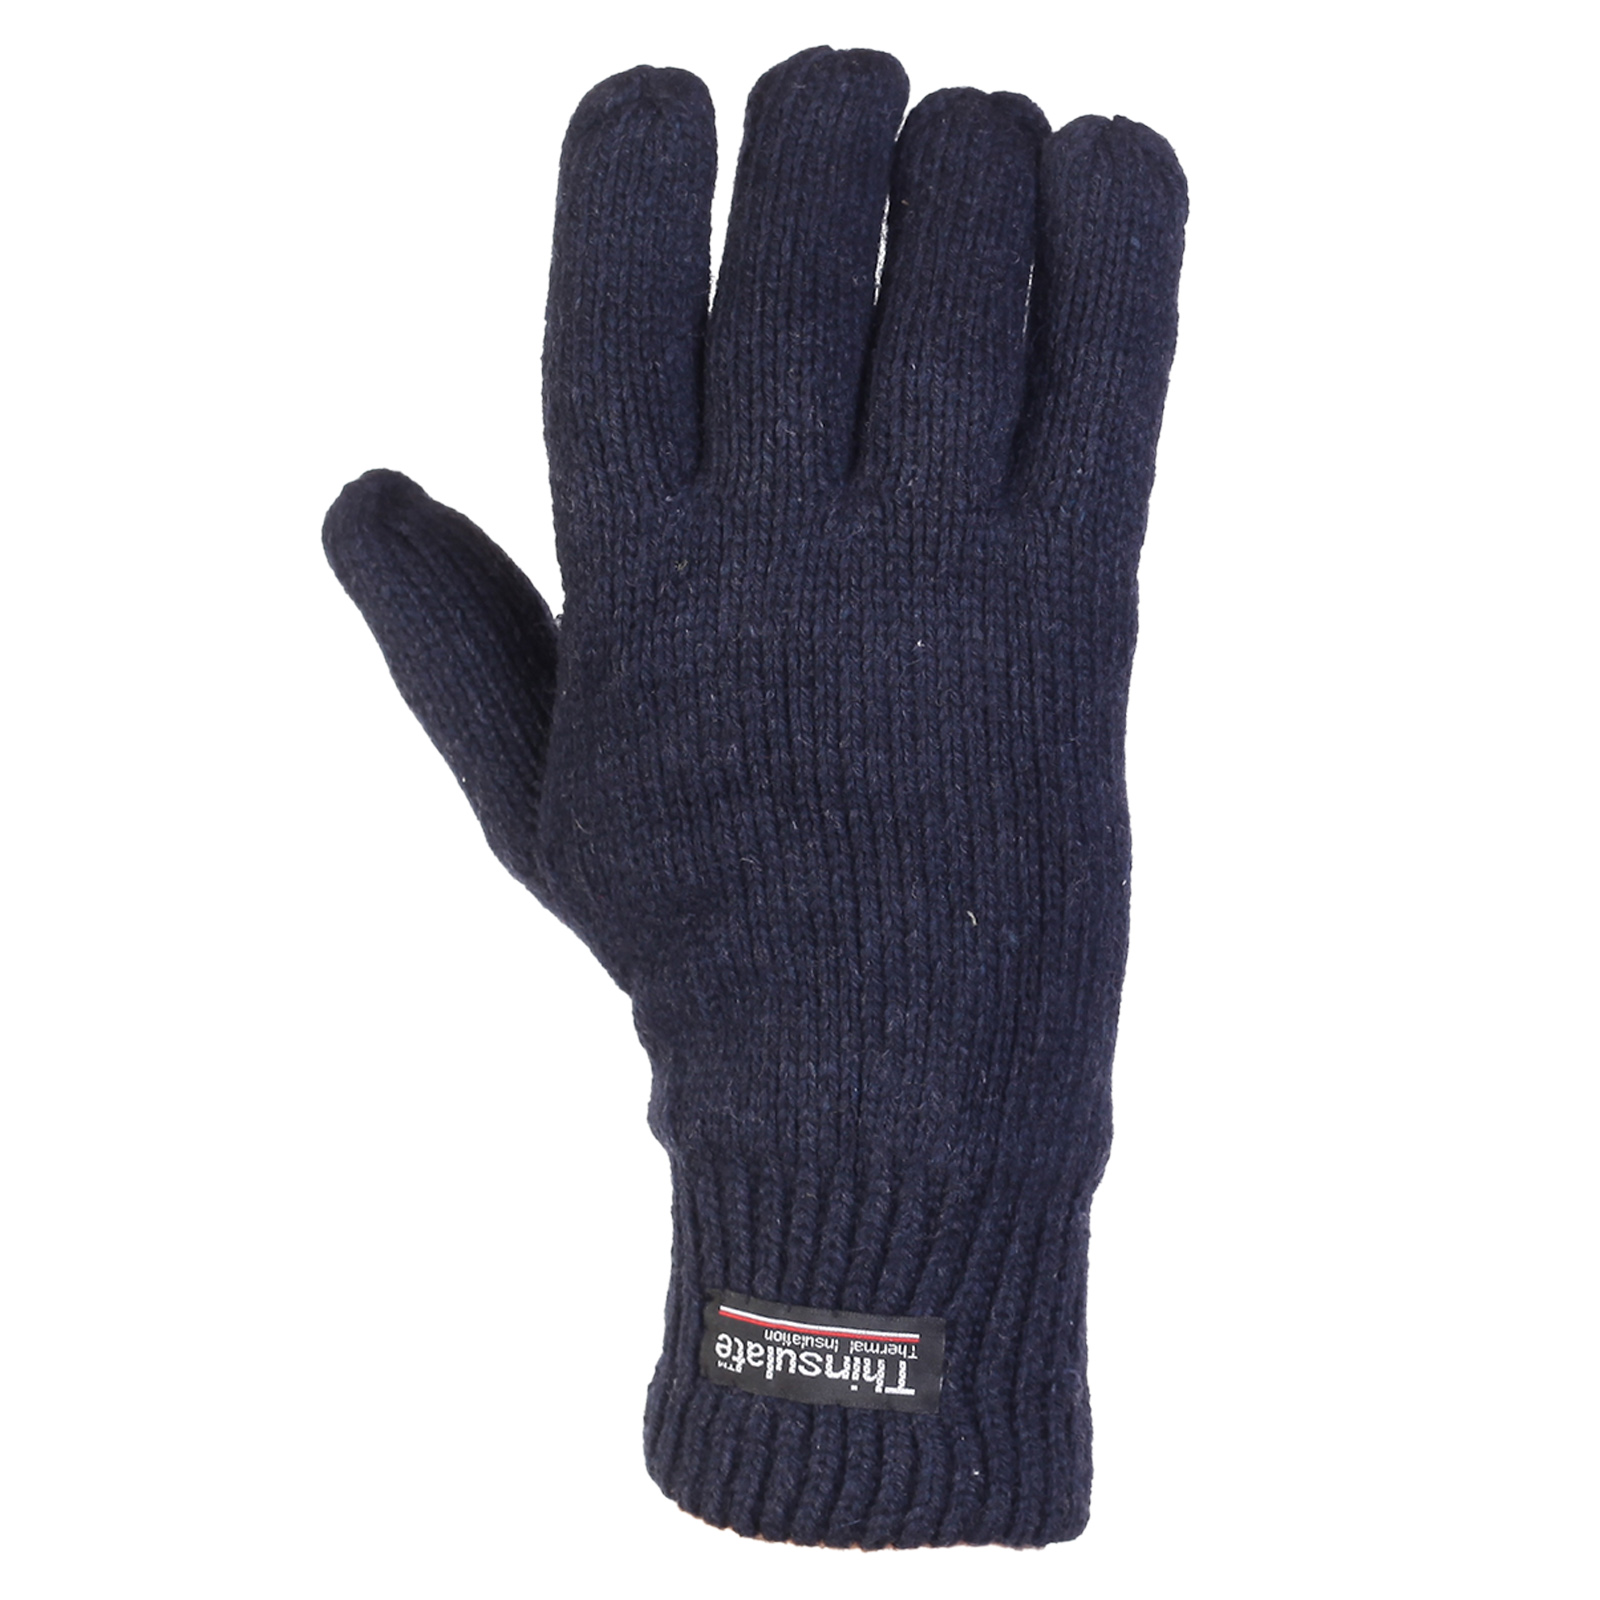 Недорогие перчатки зима – наличие и быстрая доставка